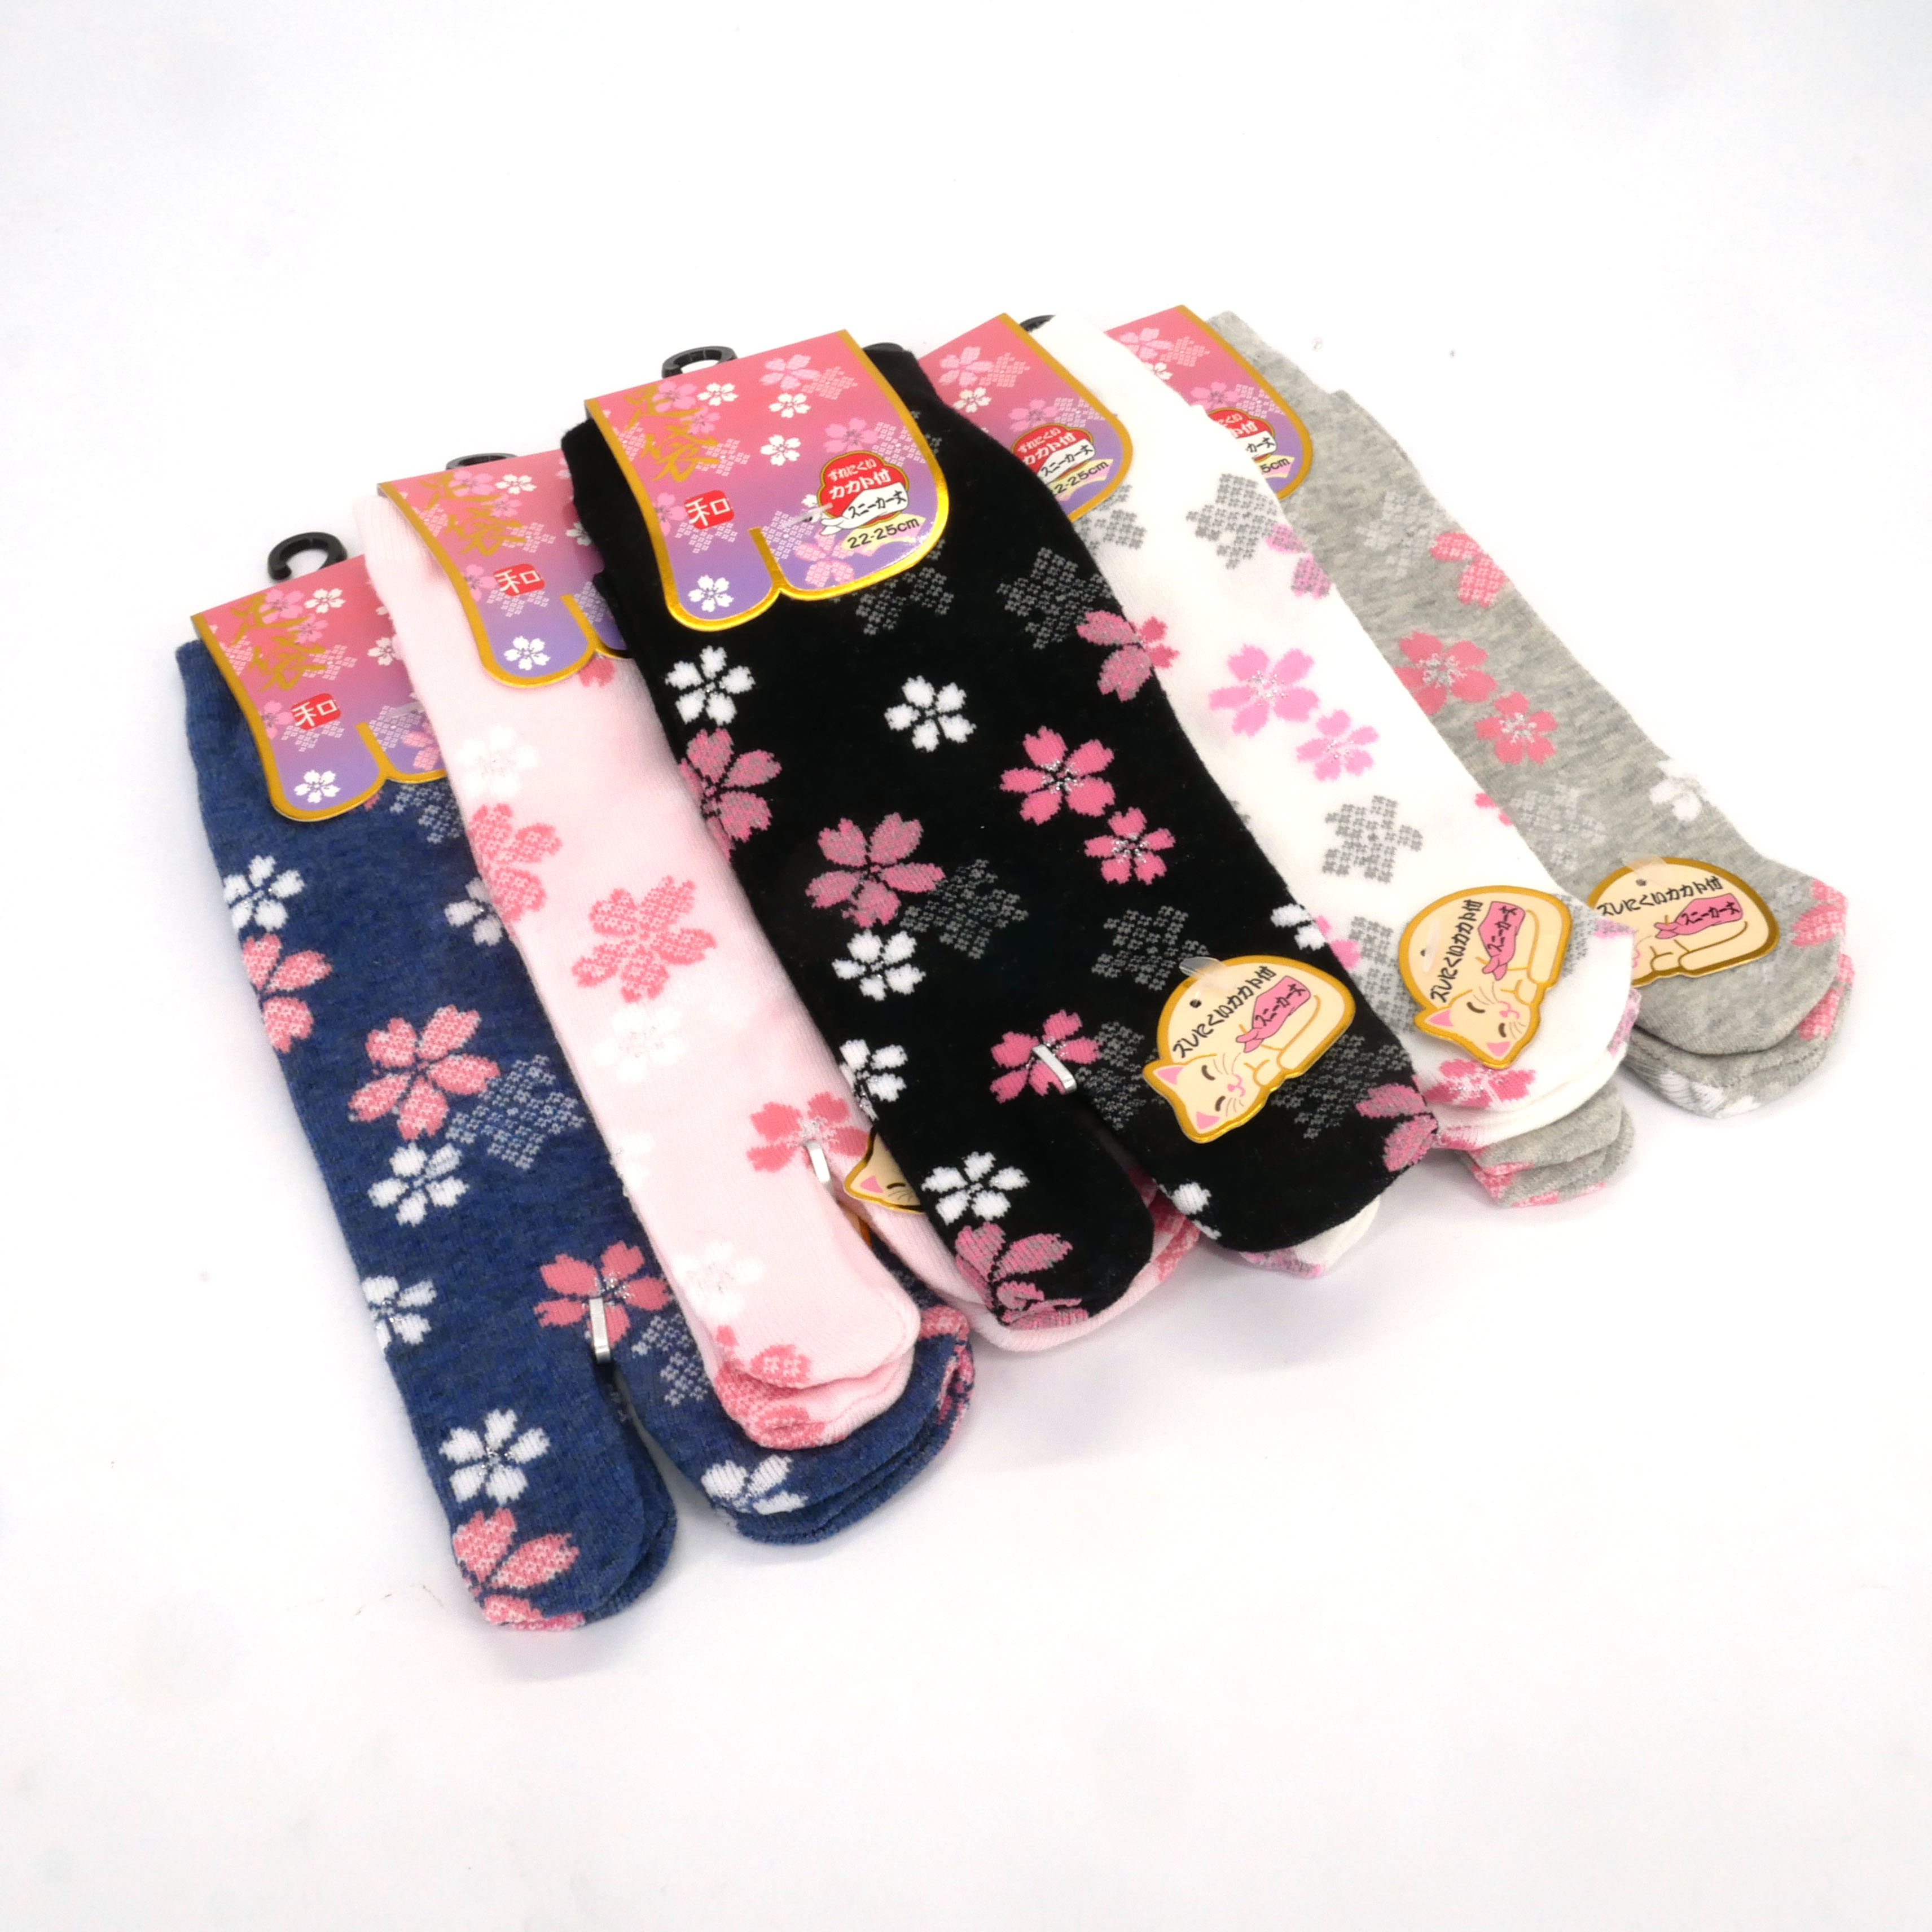 Calzini tabi giapponesi in cotone con motivo petali Sakura, SHAKURA NO  HANABIRA, colore a scelta, 22 